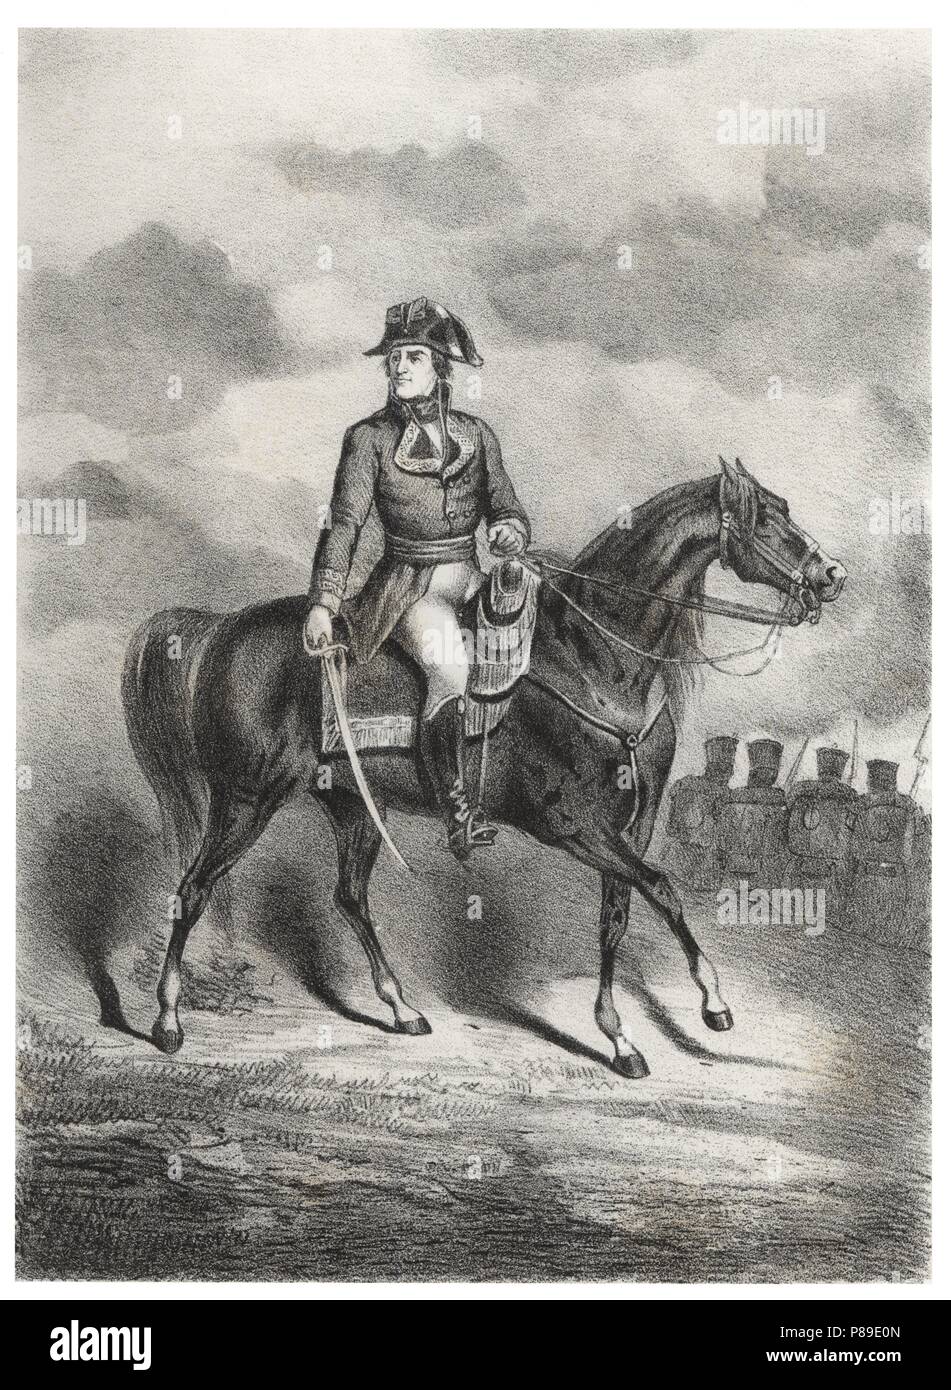 Francisco Javier Castaños Aragorri Urioste Olavide (1758-1852), Duque de Bailén, militar y político español. Grabado de 1880. Foto Stock